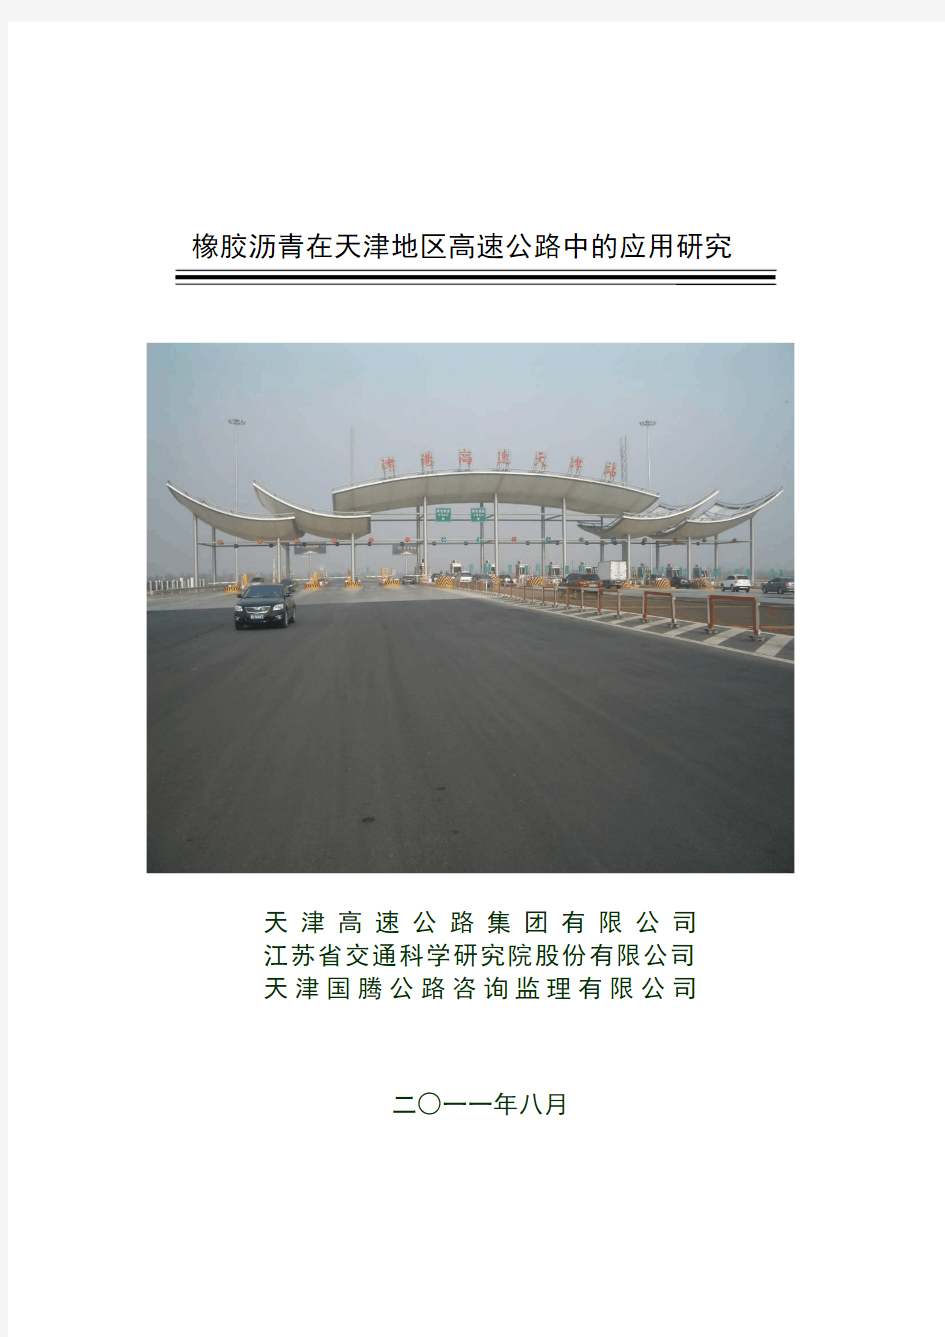 橡胶沥青技术在天津的应用研究11.17终稿